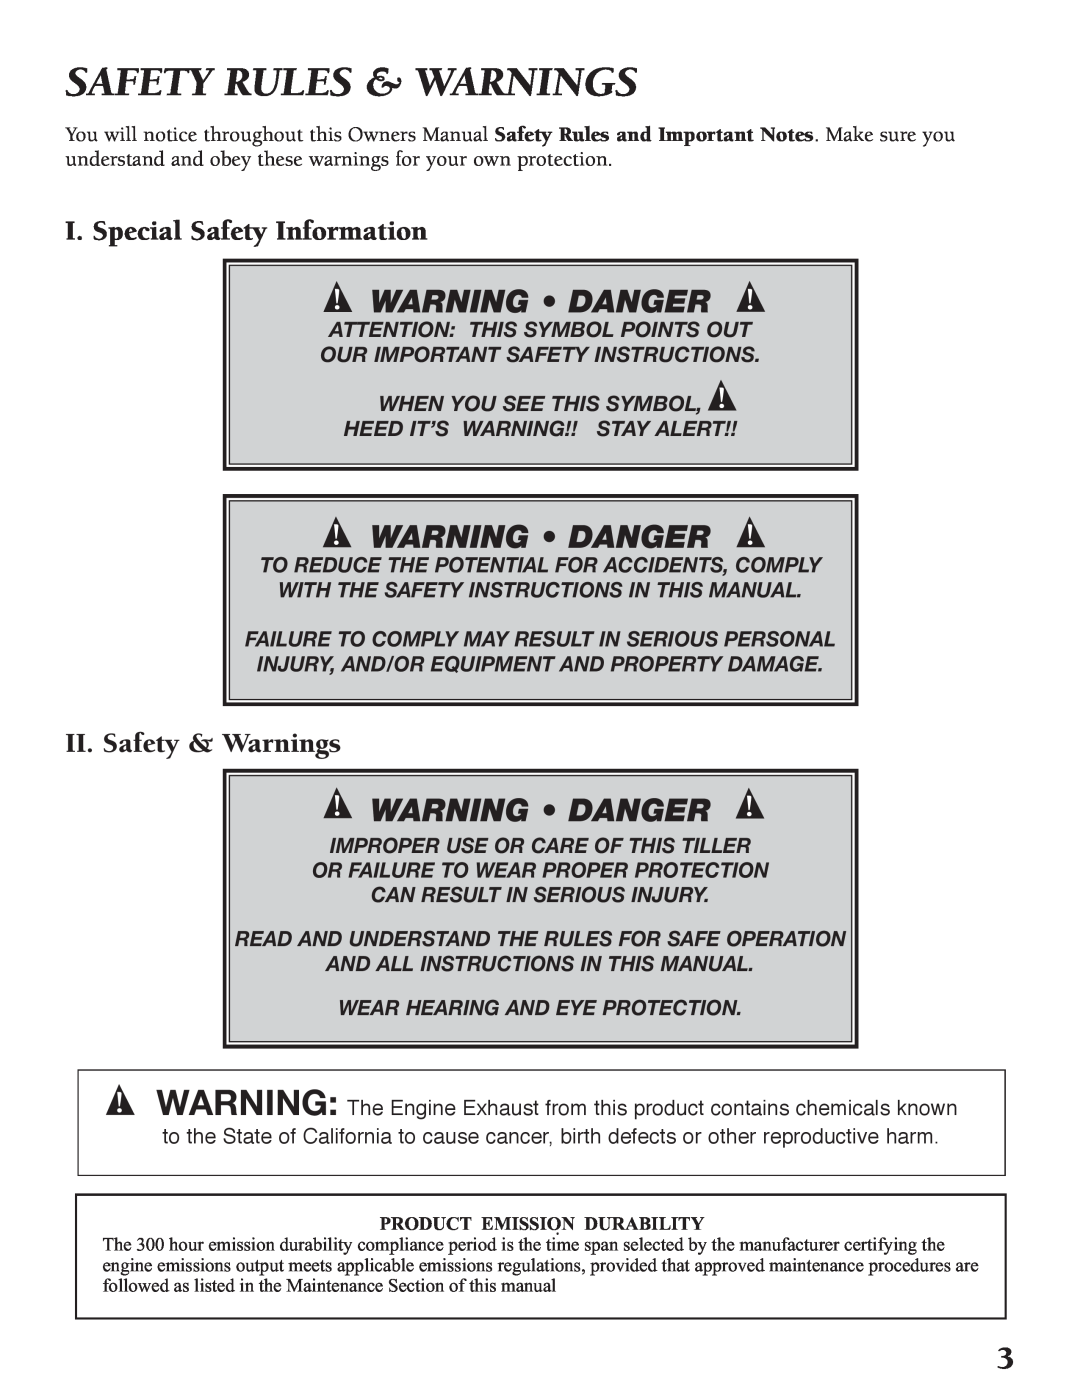 Little Wonder Tiller/Cultivator owner manual Safety Rules & Warnings, Warning • Danger, I. Special Safety Information 